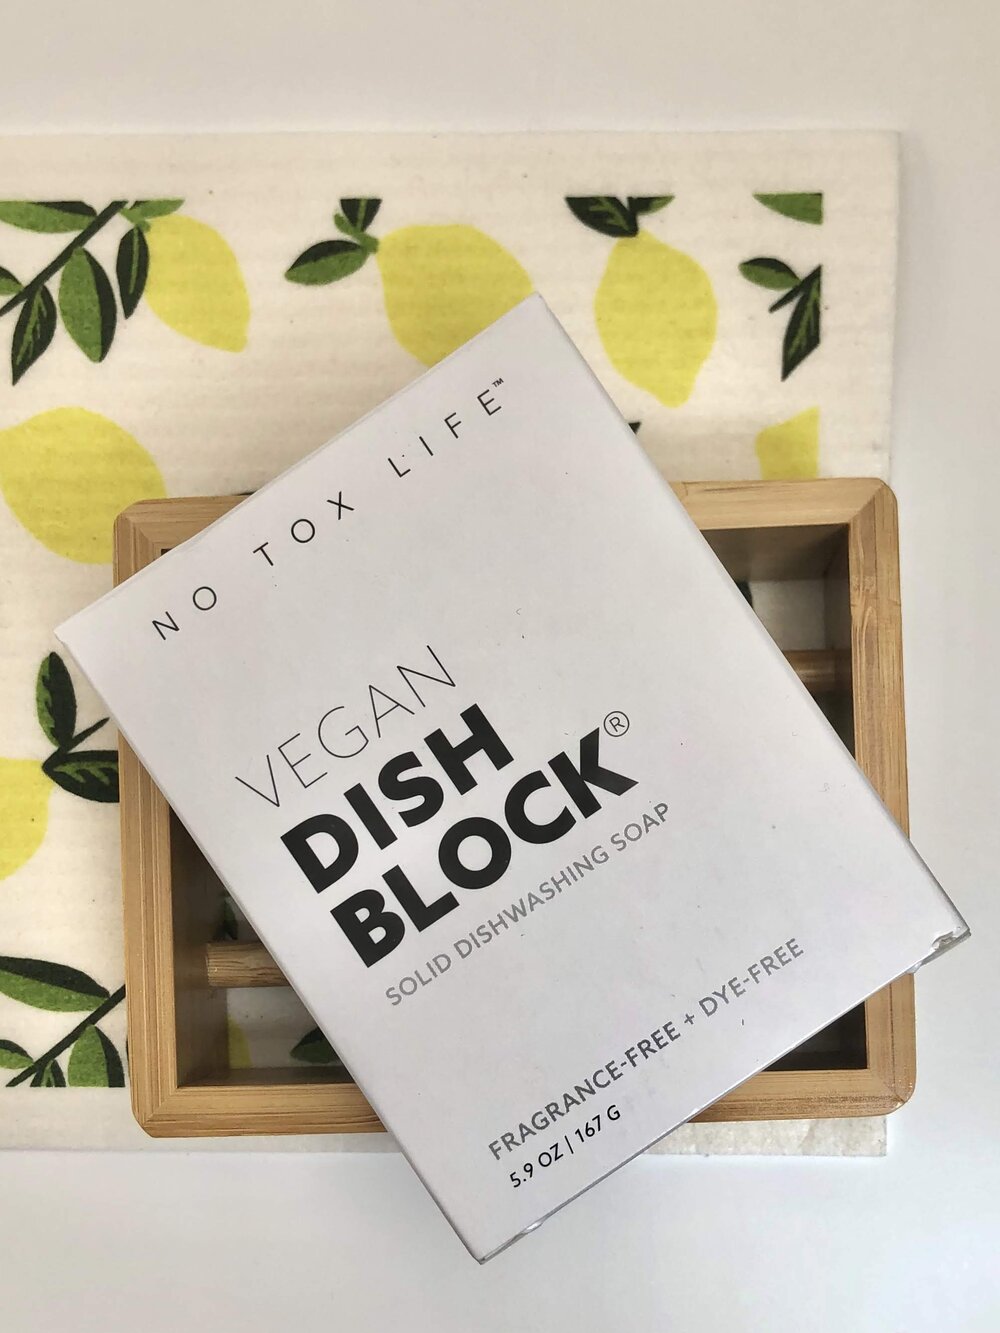 No Tox Life Vegan Dish Block